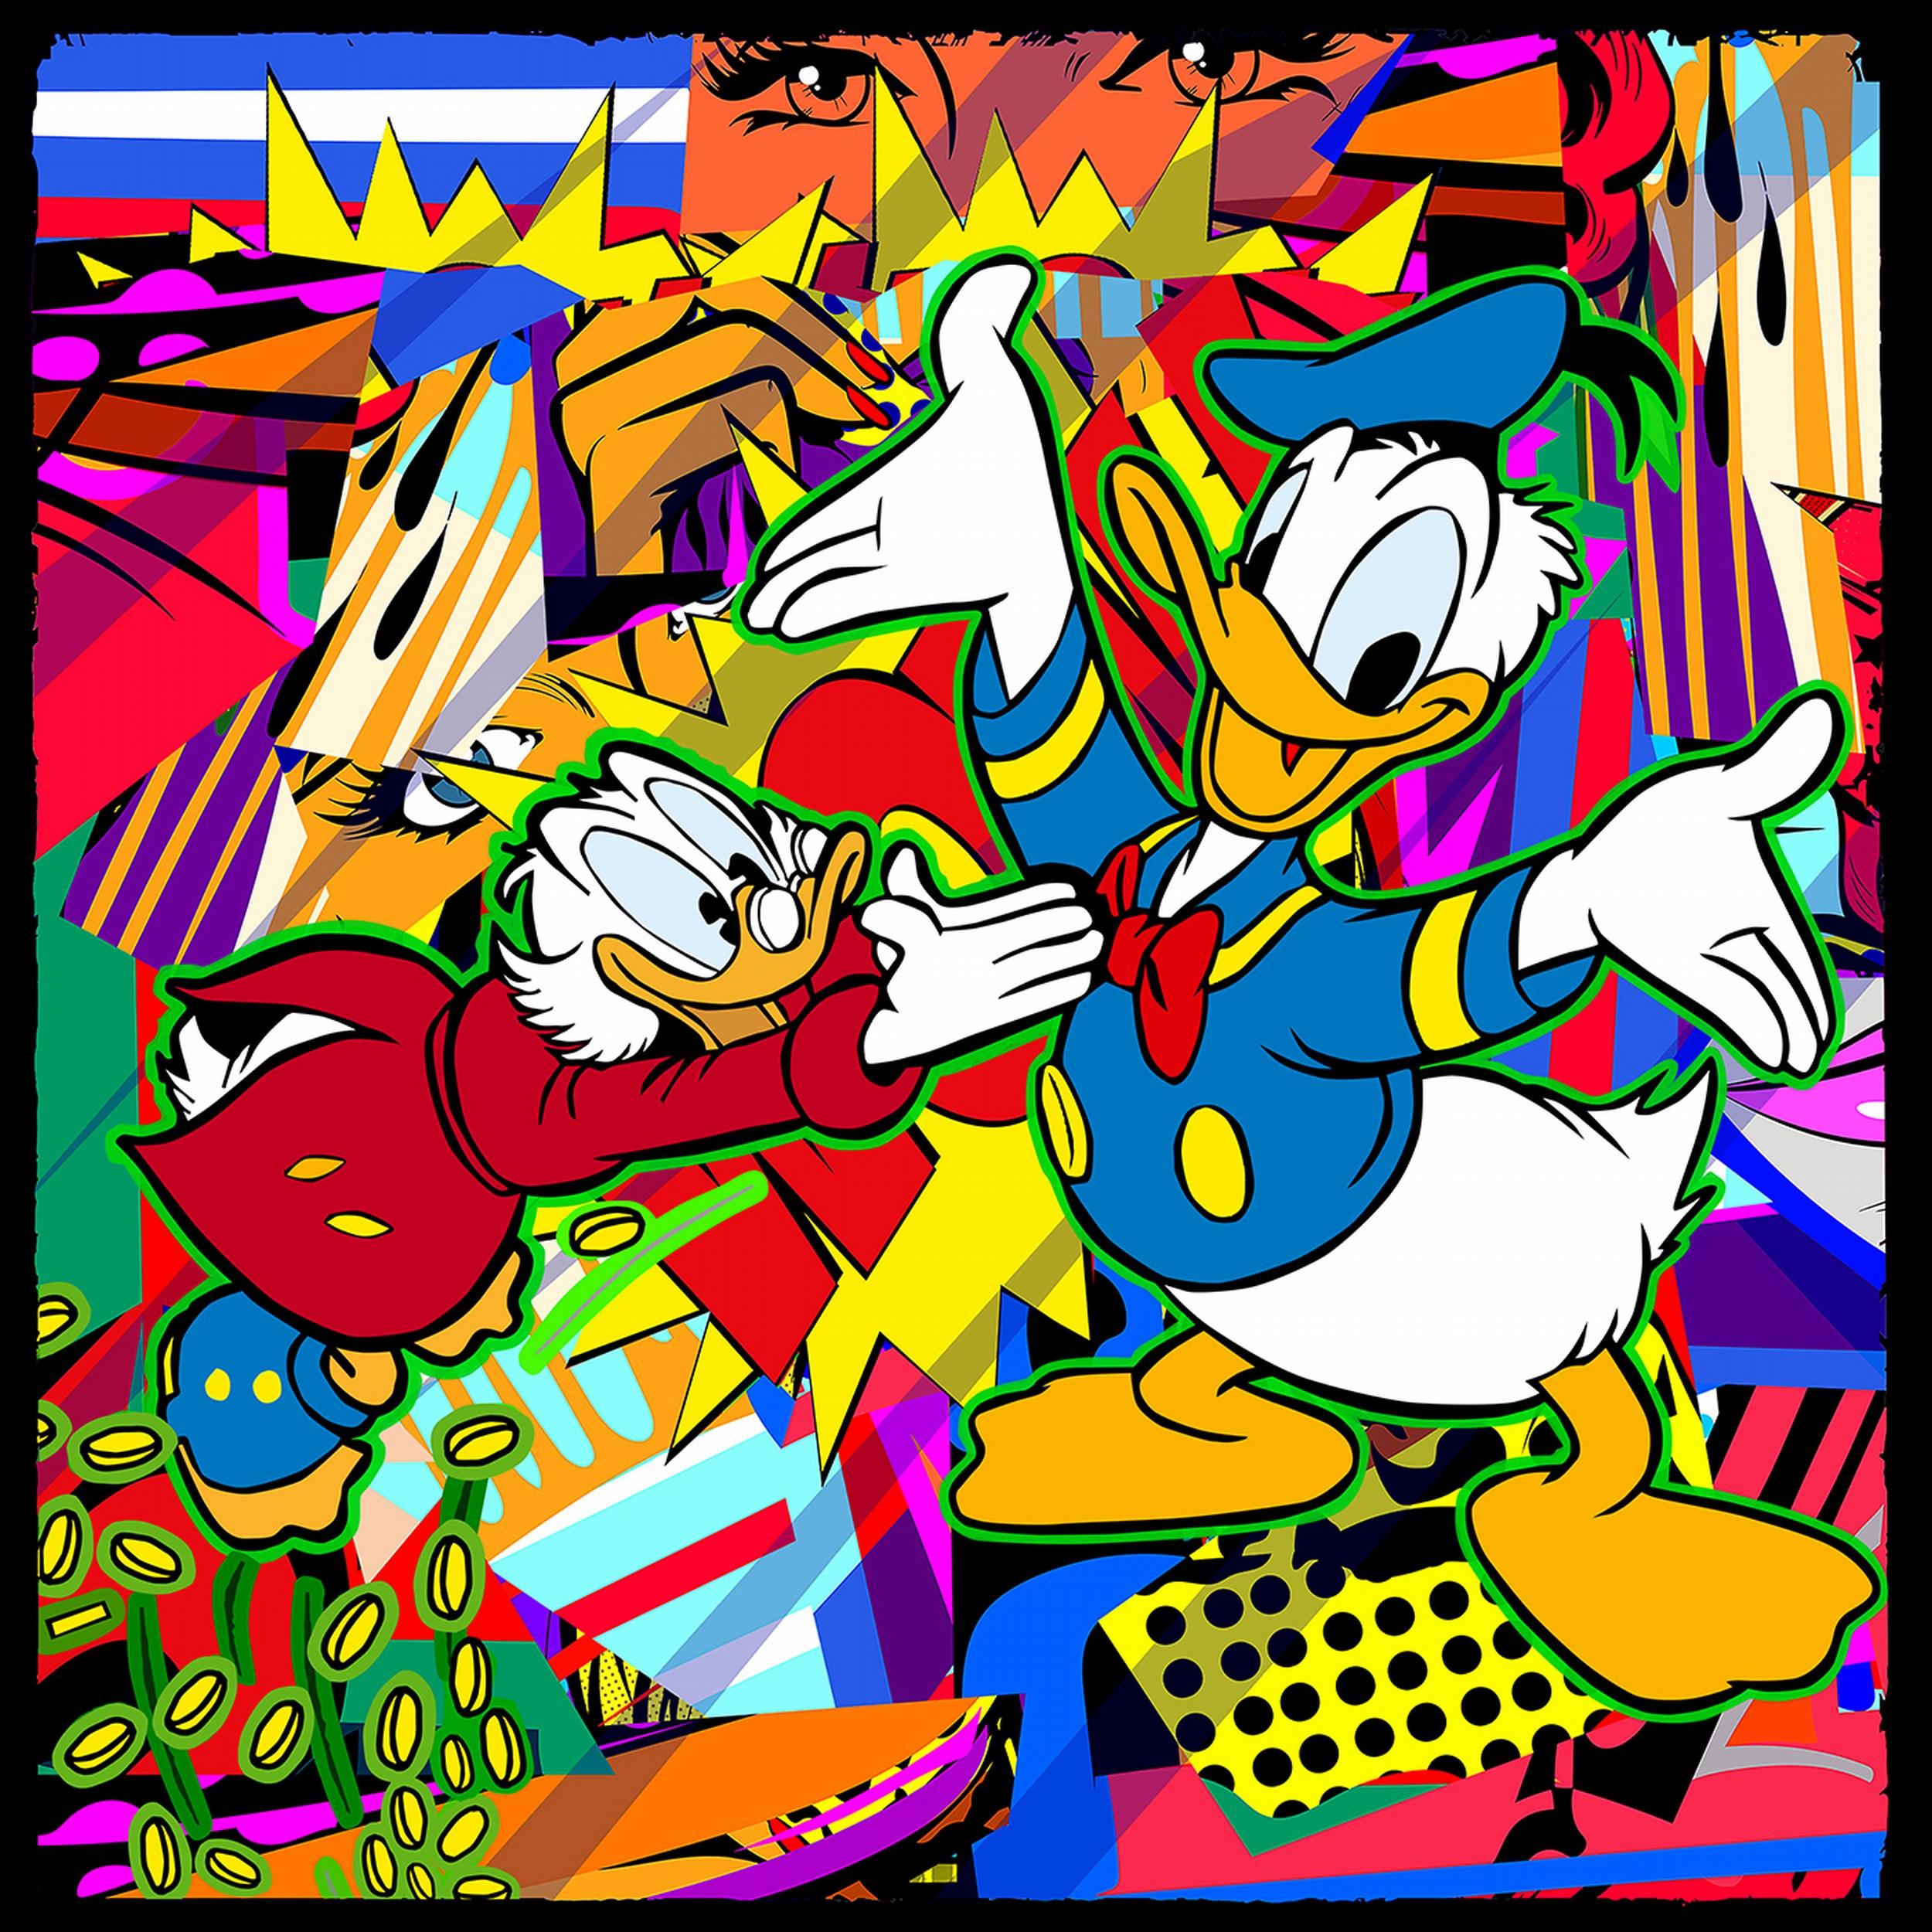 Never Duck Family Fortune (Pop Art, Street Art, Urban Art, Disney, Donald Duck)